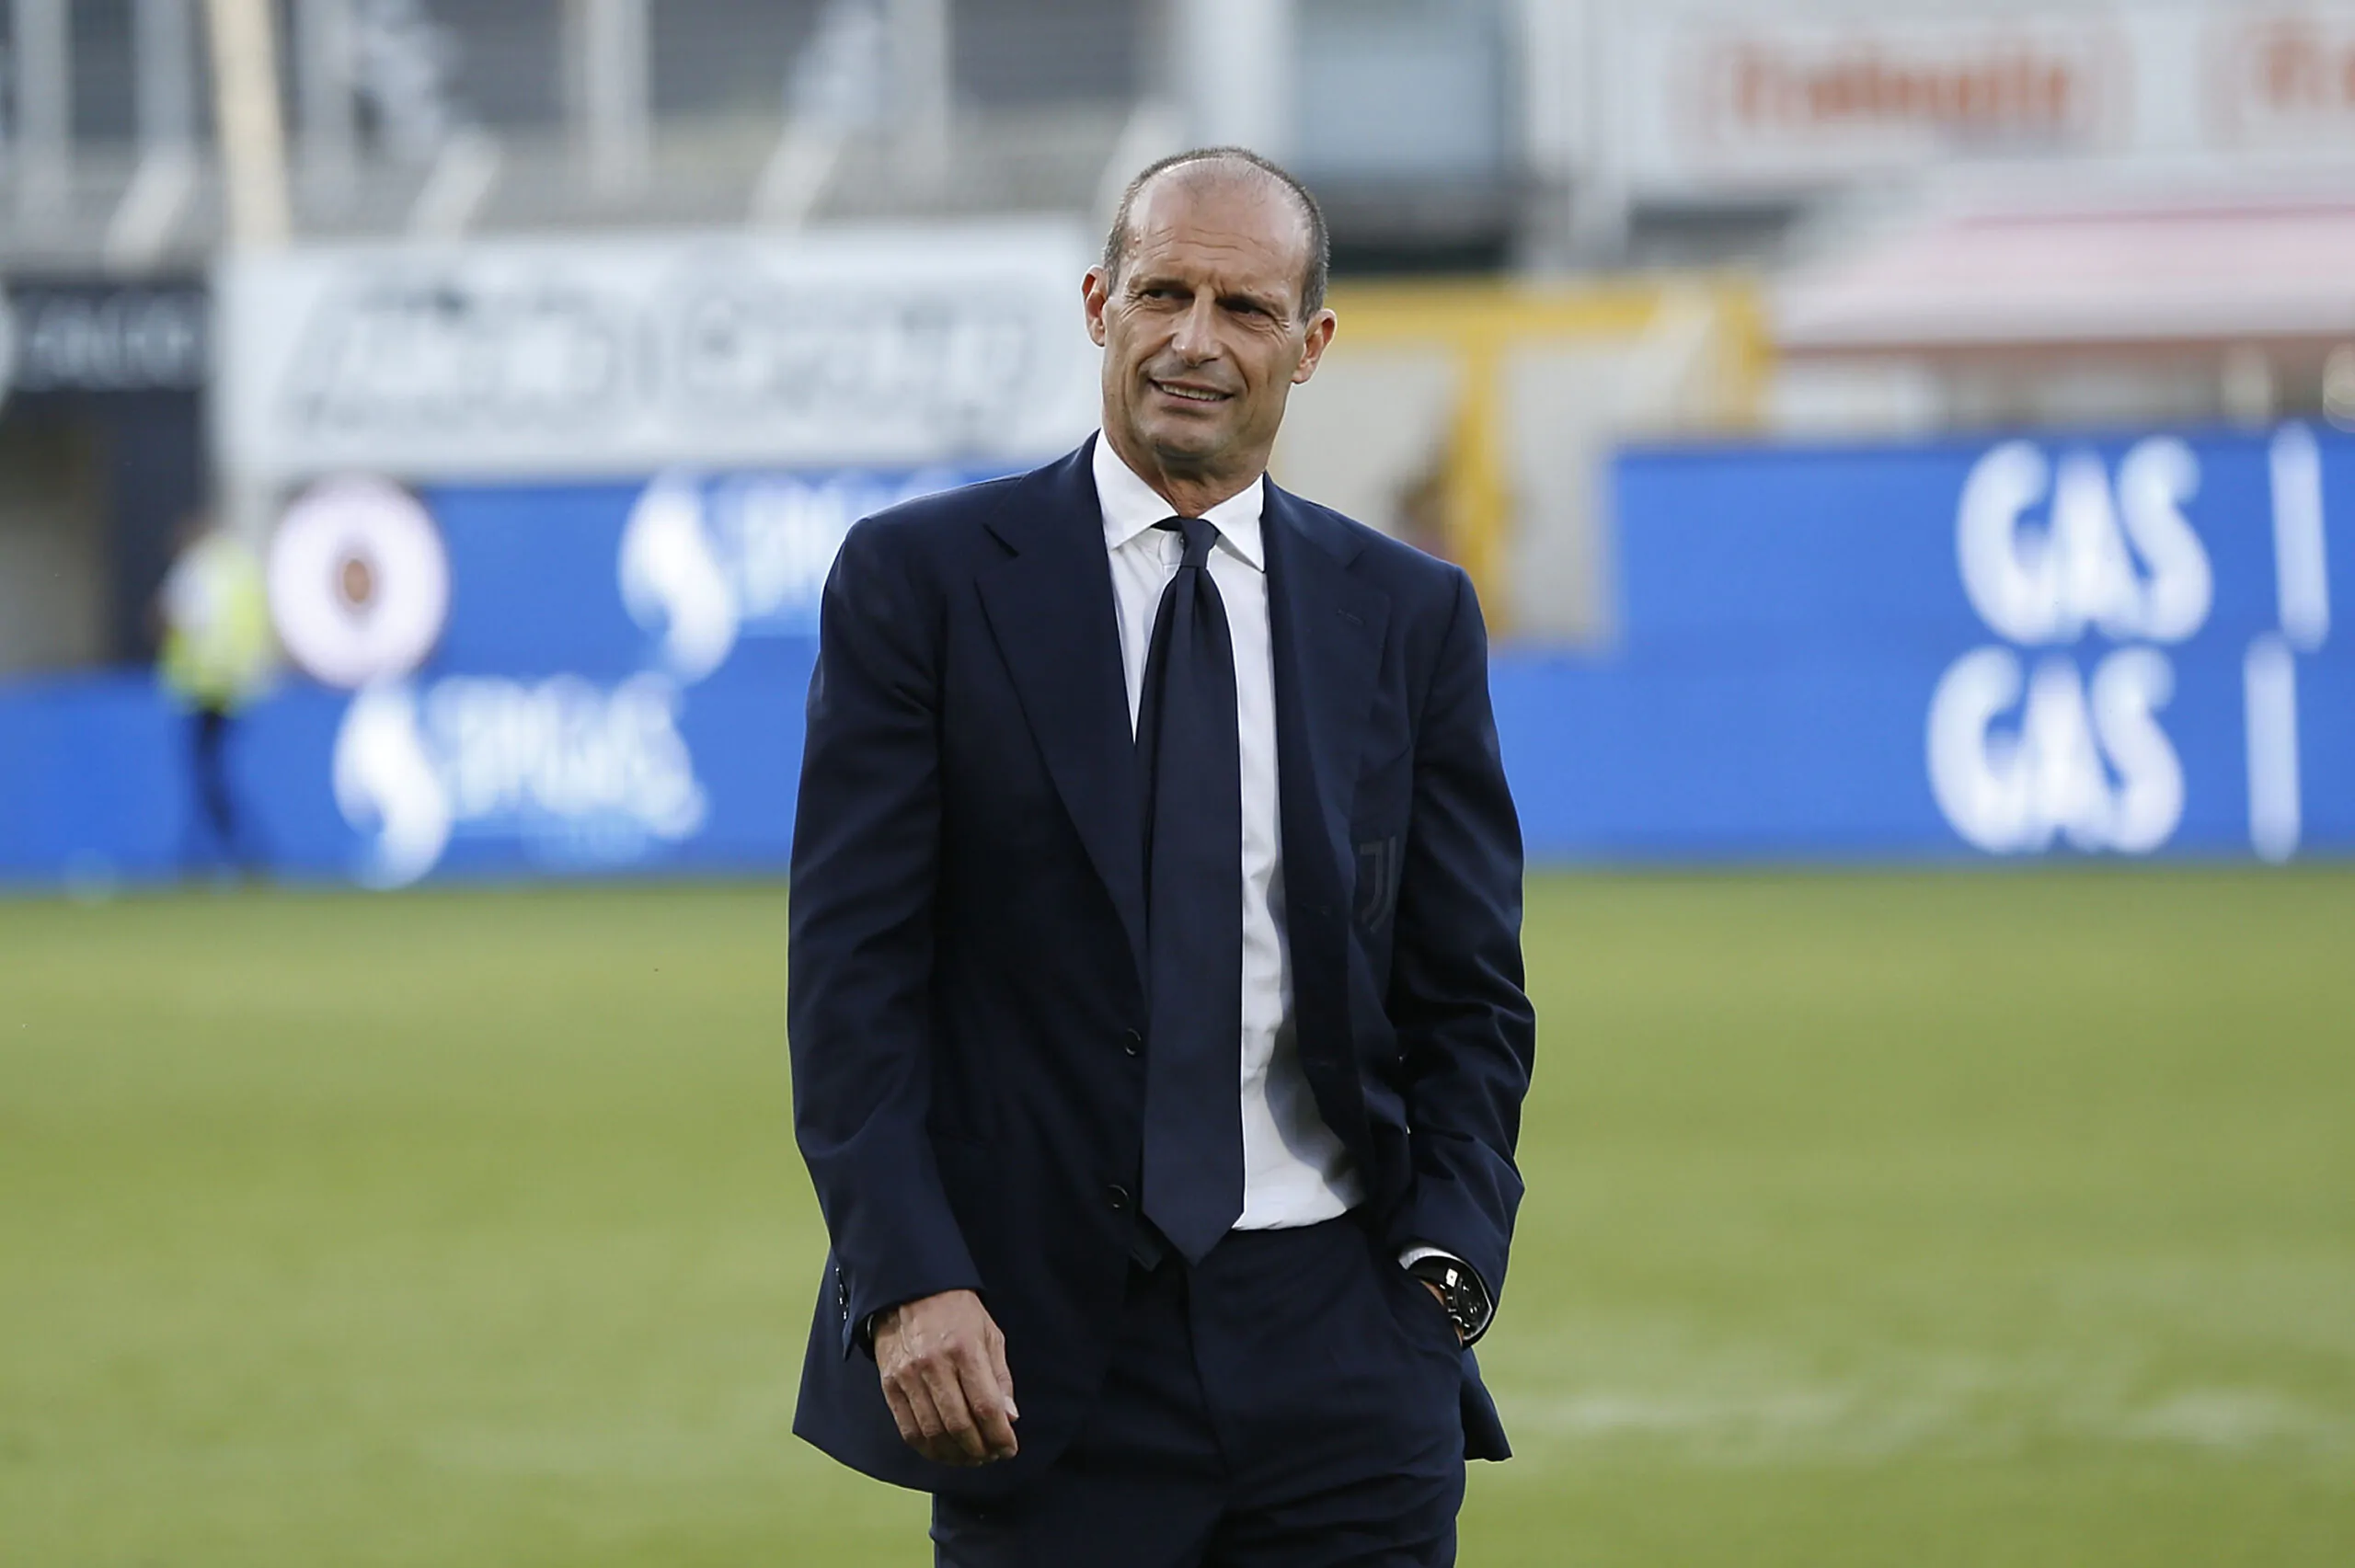 L’opinionista ne è sicuro: “La Juventus ha giocatori non compatibili con il calcio di Allegri”